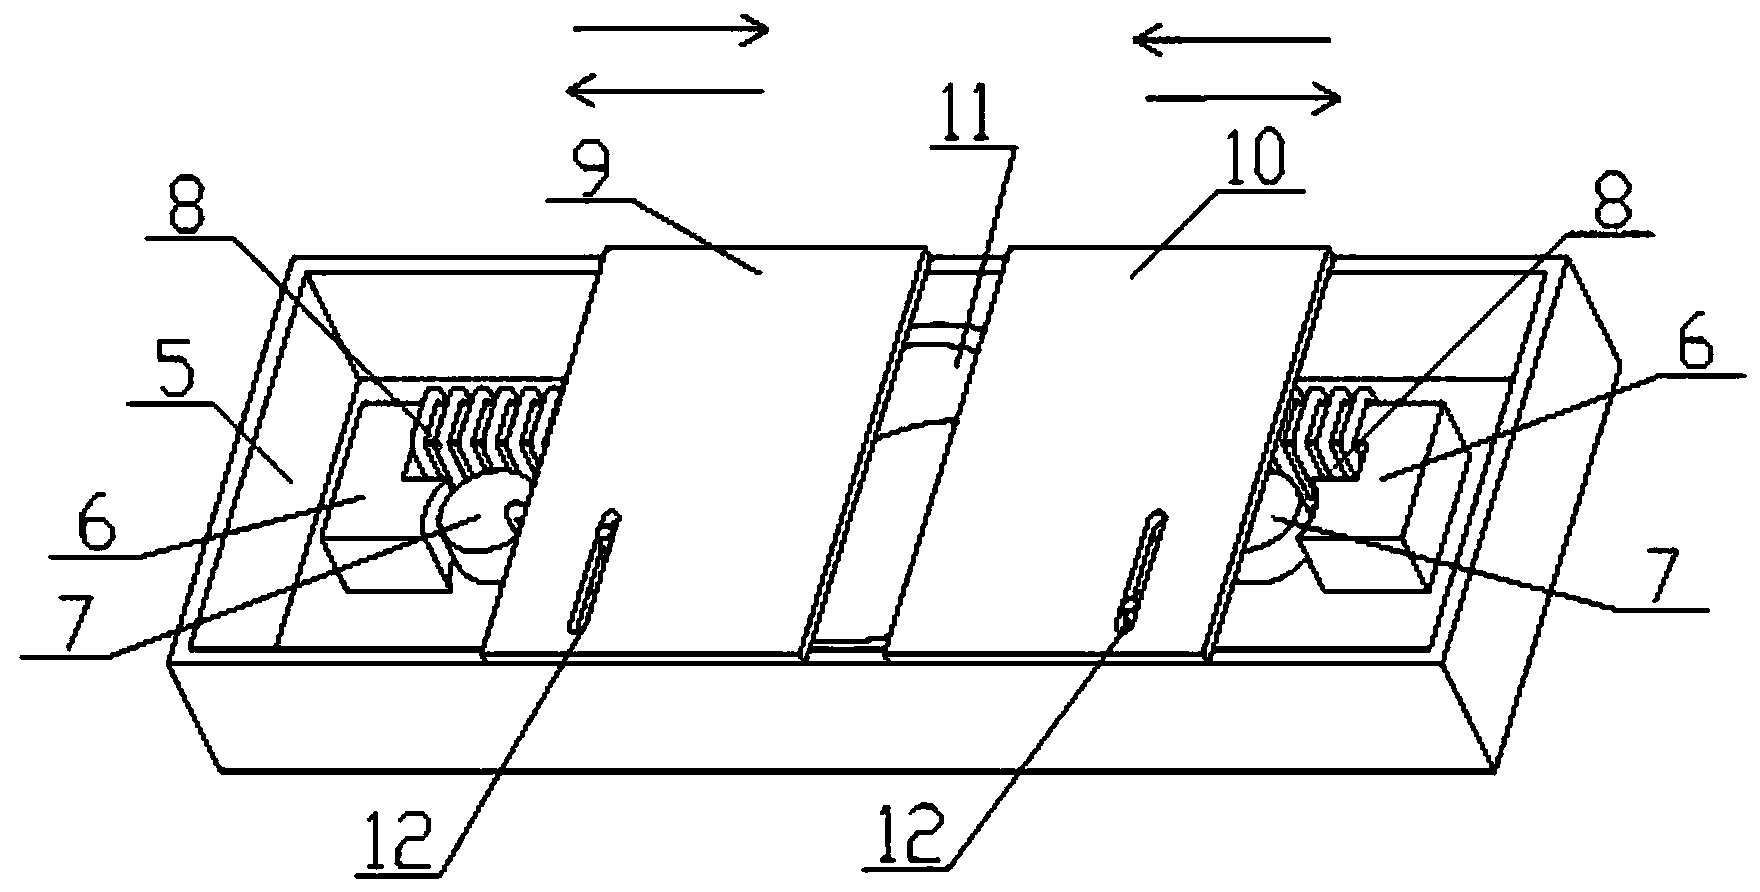 Focal plane shutter structure